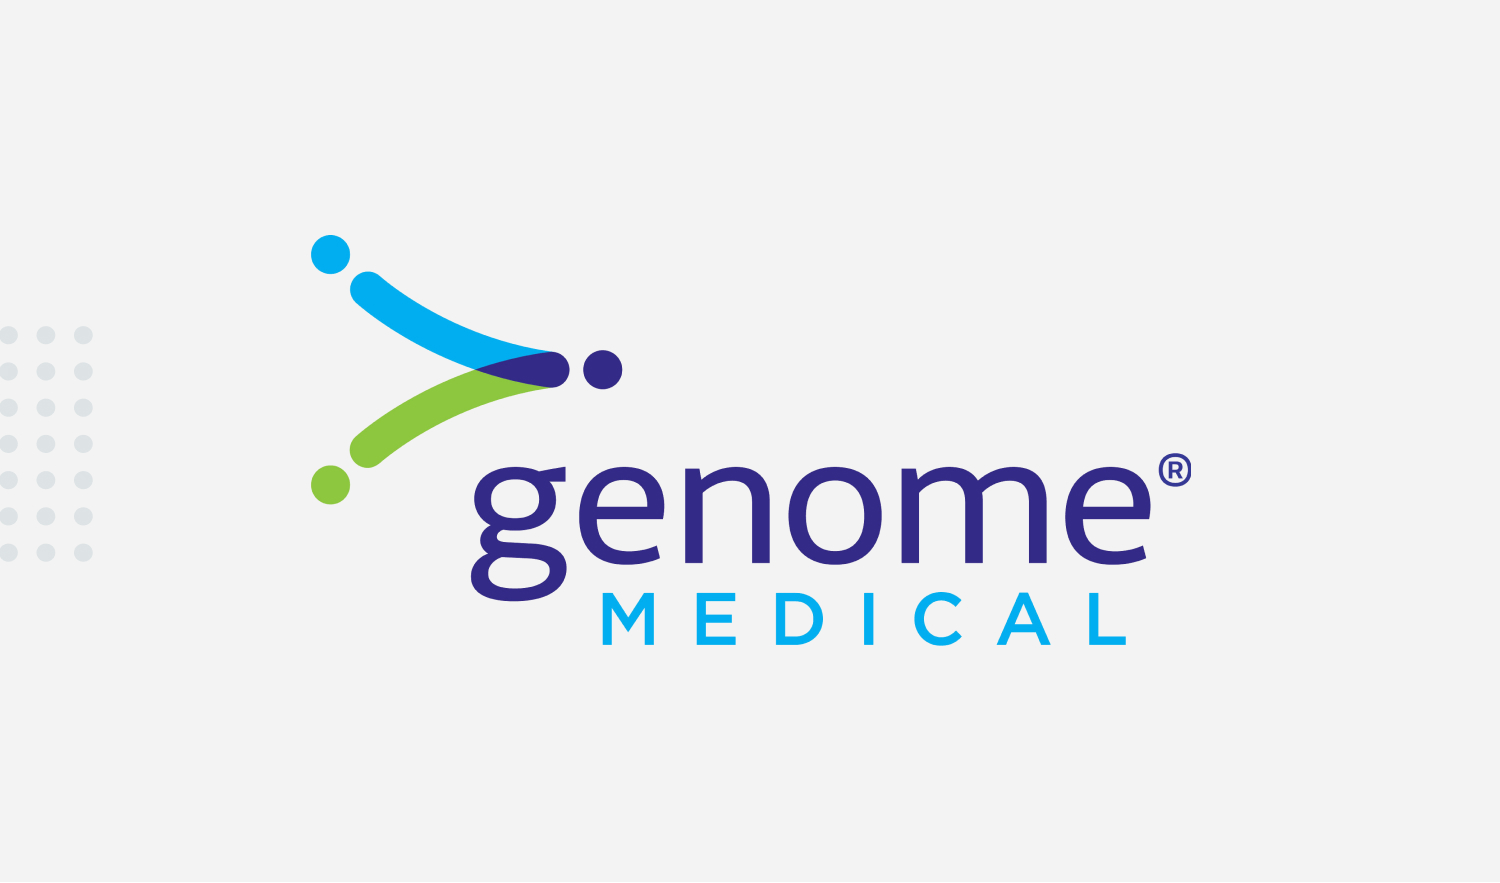 Echo Genome Medical